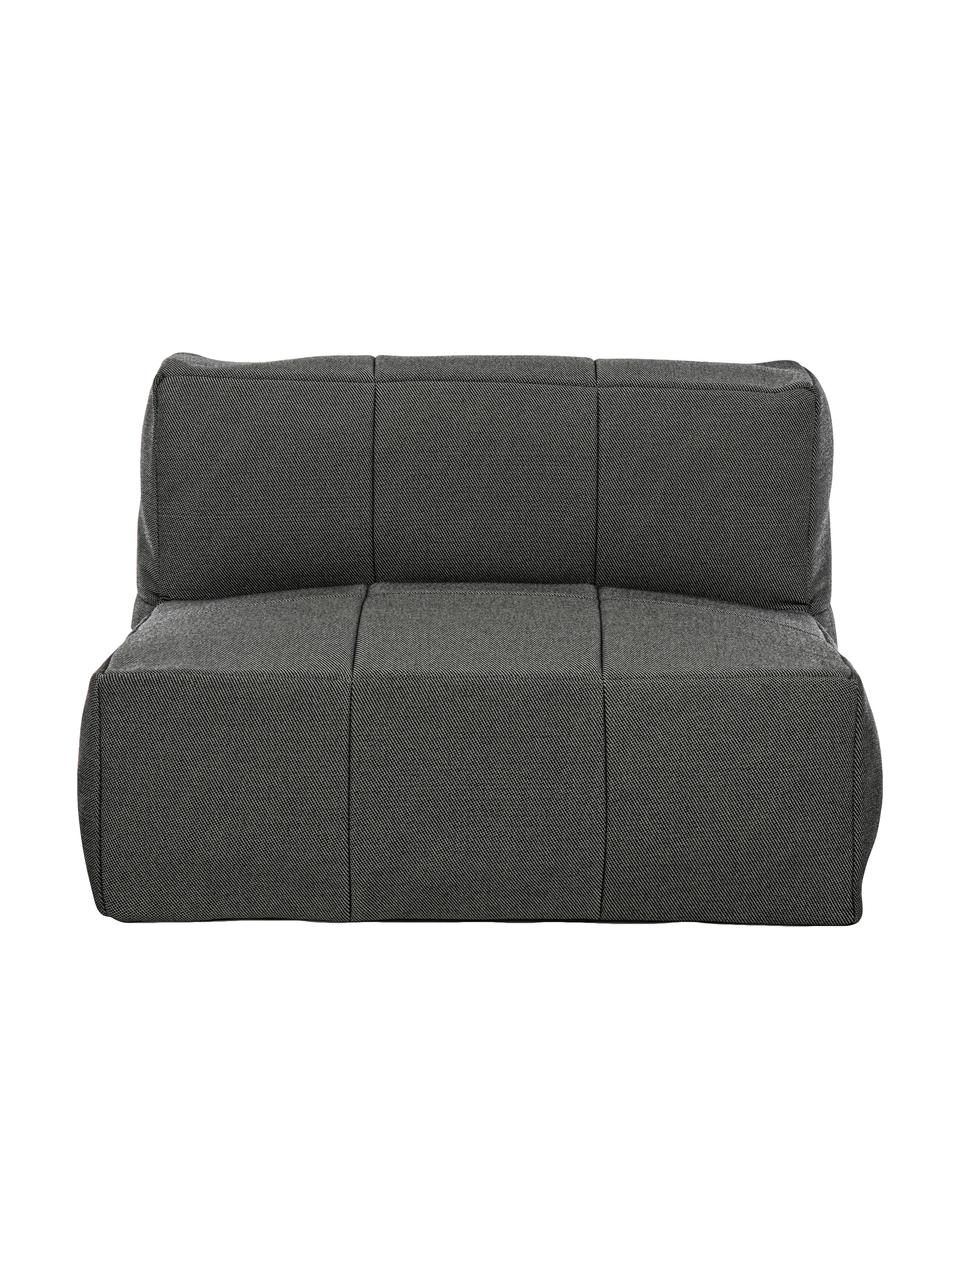 Ogrodowy fotel wypoczynkowy Sparrow, Stelaż: aluminium, Tapicerka: olefin (100% polipropylen, Antracytowy, S 90 x G 87 cm